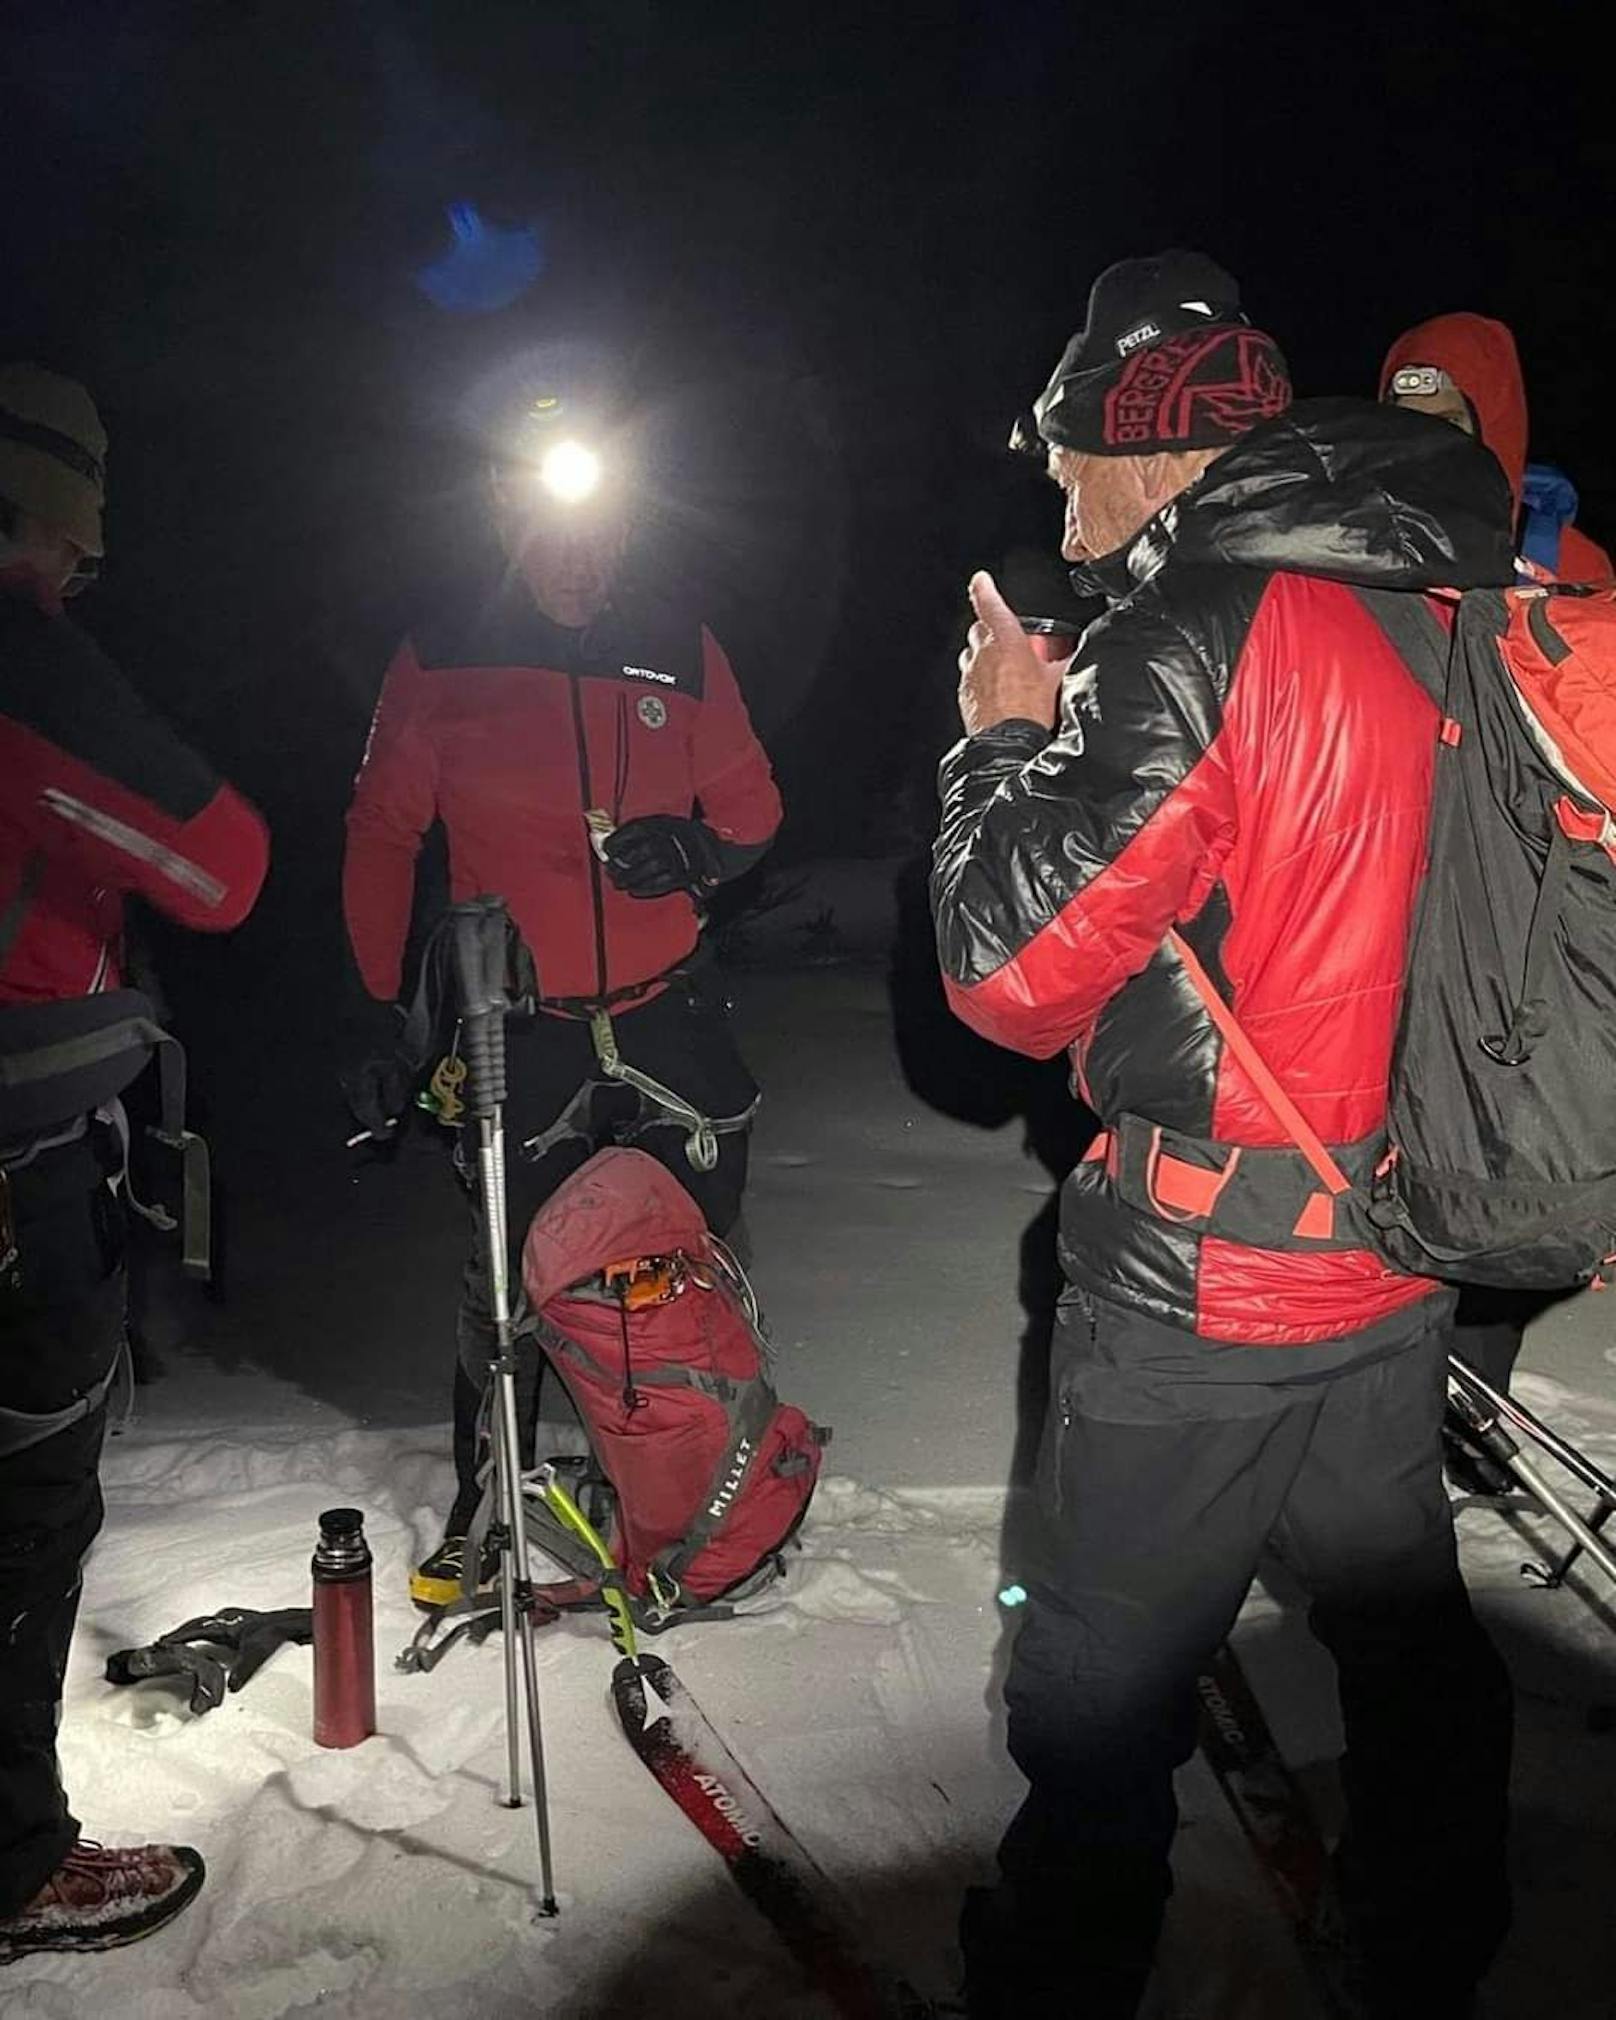 Bergrettung rettet zwei Wanderer auf der Rax